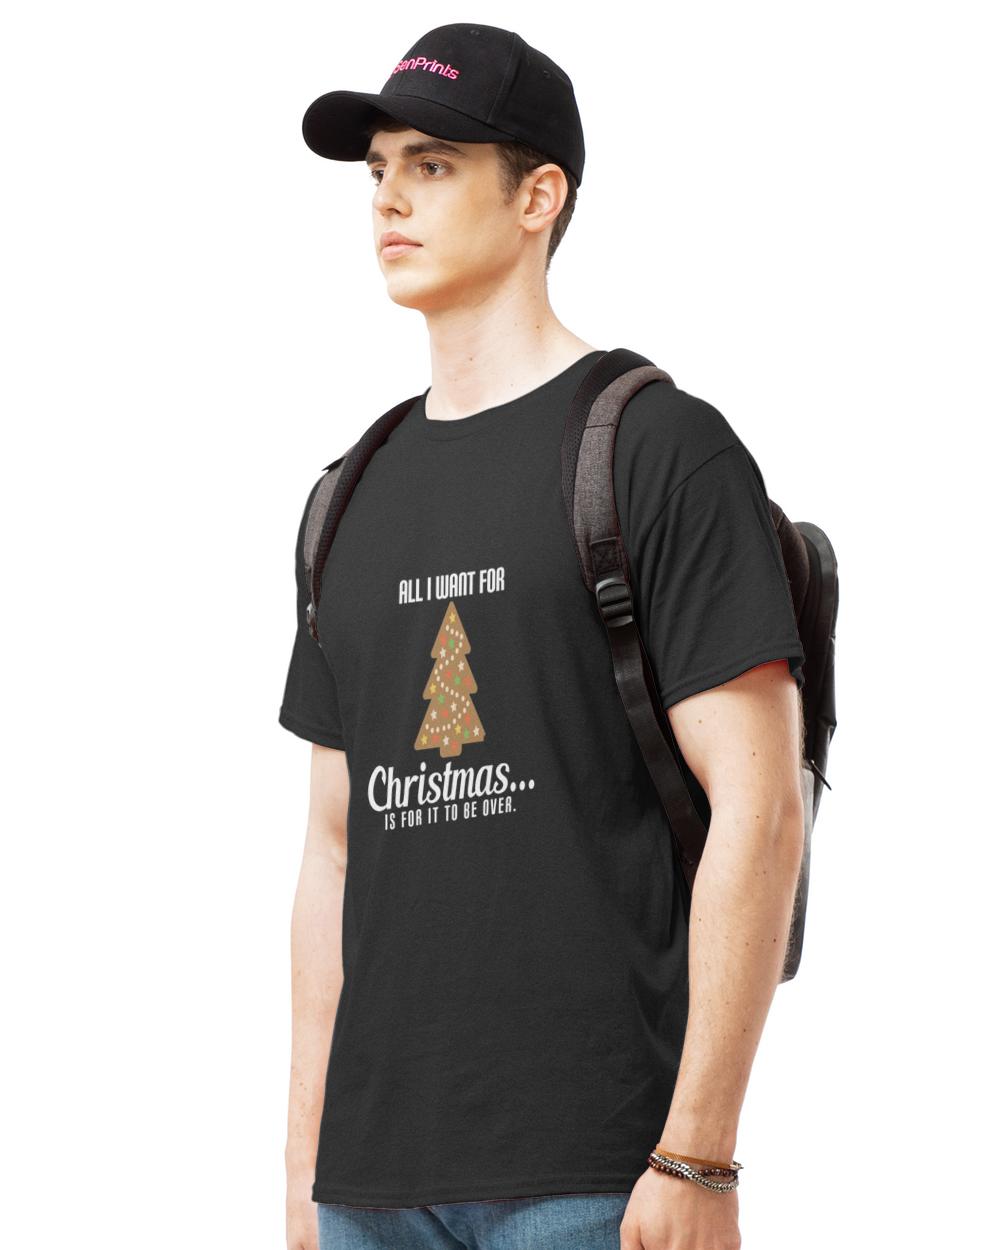 Nice kopie von kopie von kopie von all men are created equal archeologists6513 t-shirt